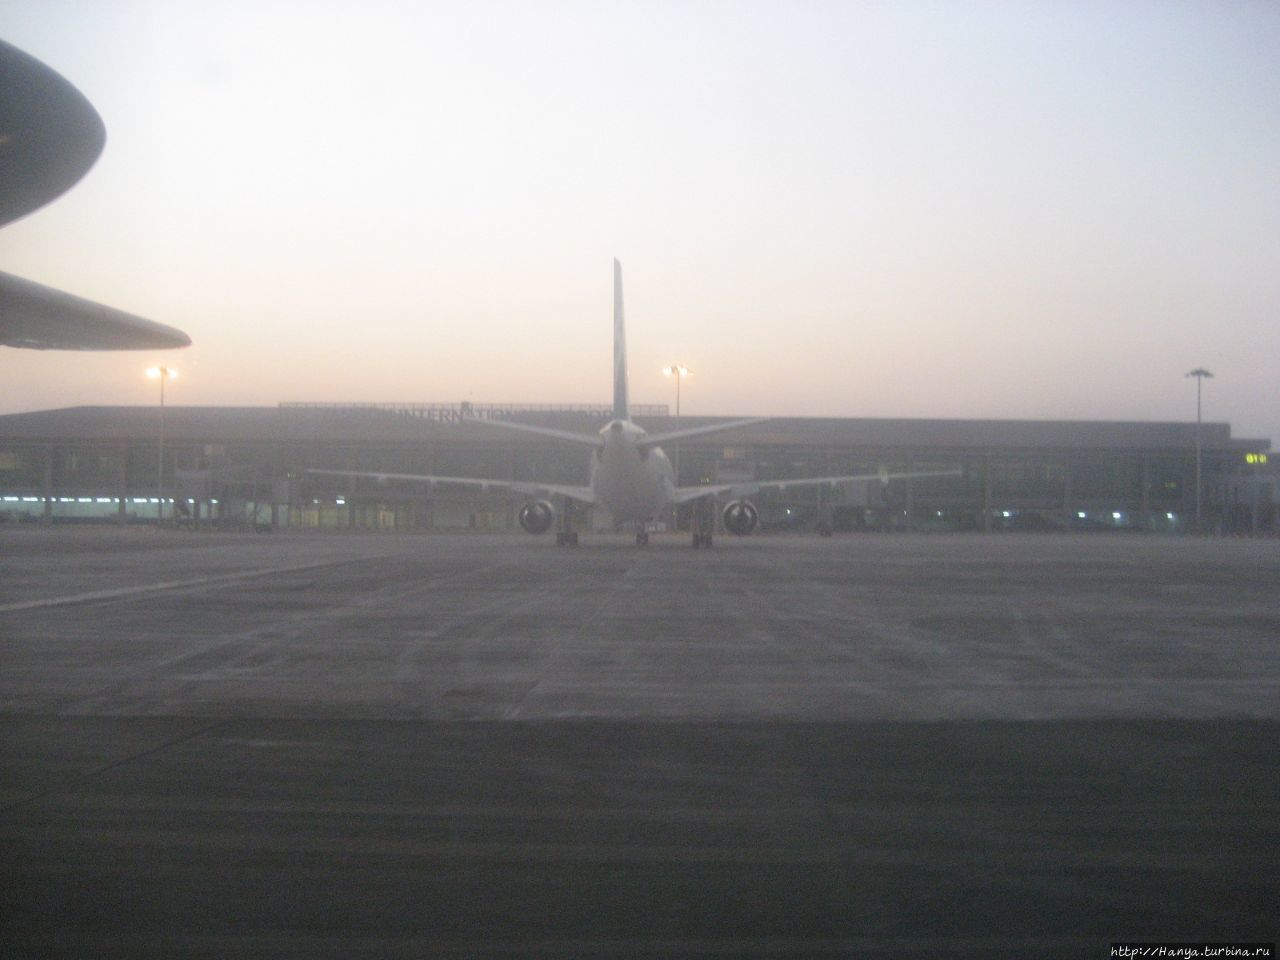 Вылет из местного аэропорта Янгуна Янгон, Мьянма